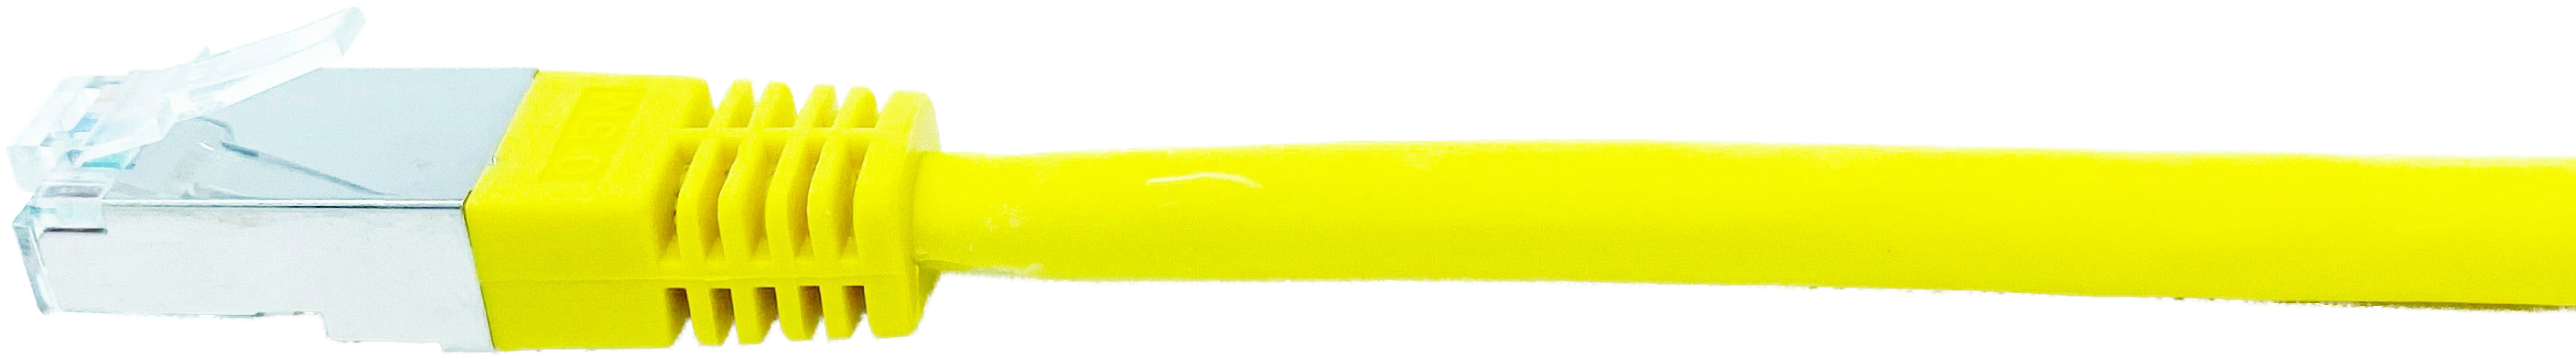 Kupferpatchkabel Cat.6 250MHz 3,0m gelb